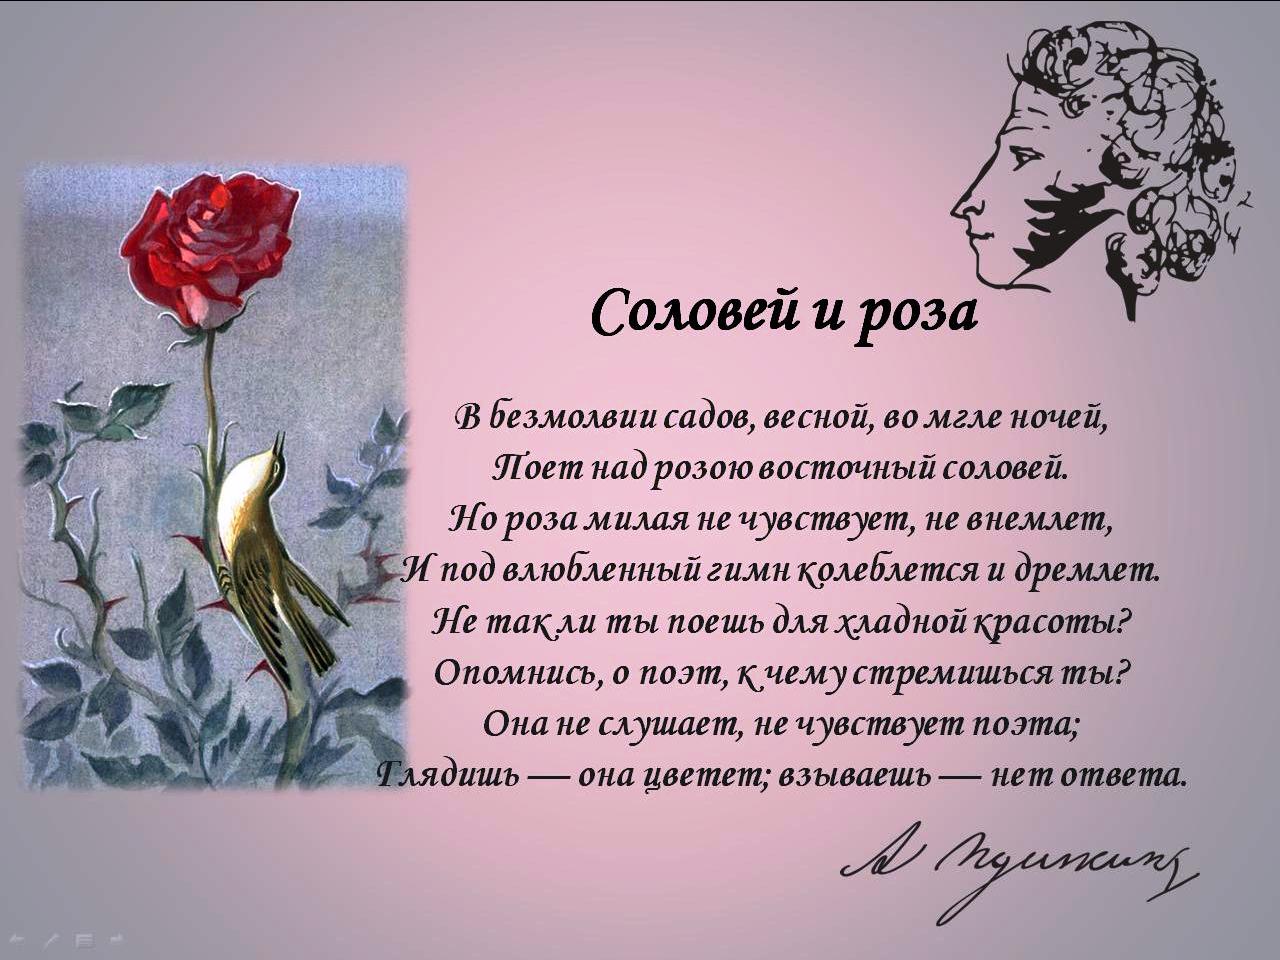 Песня соловья анализ стихотворения. Стихотворение про розу. Красивые стихи о цветах розах.